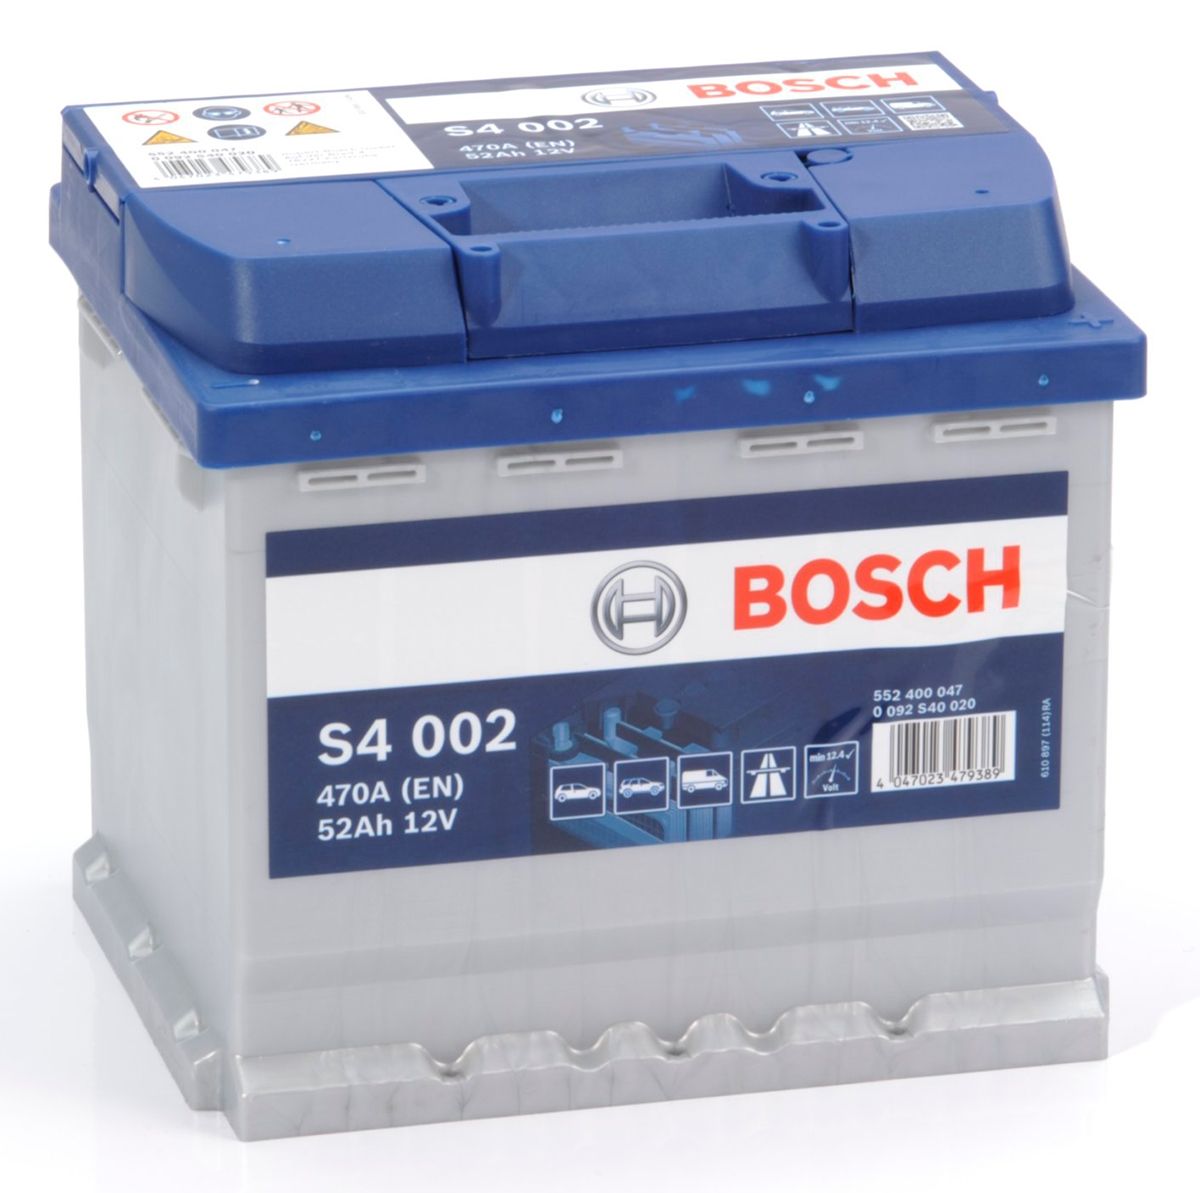 Reyhan Blog Bosch Car Batteries Review